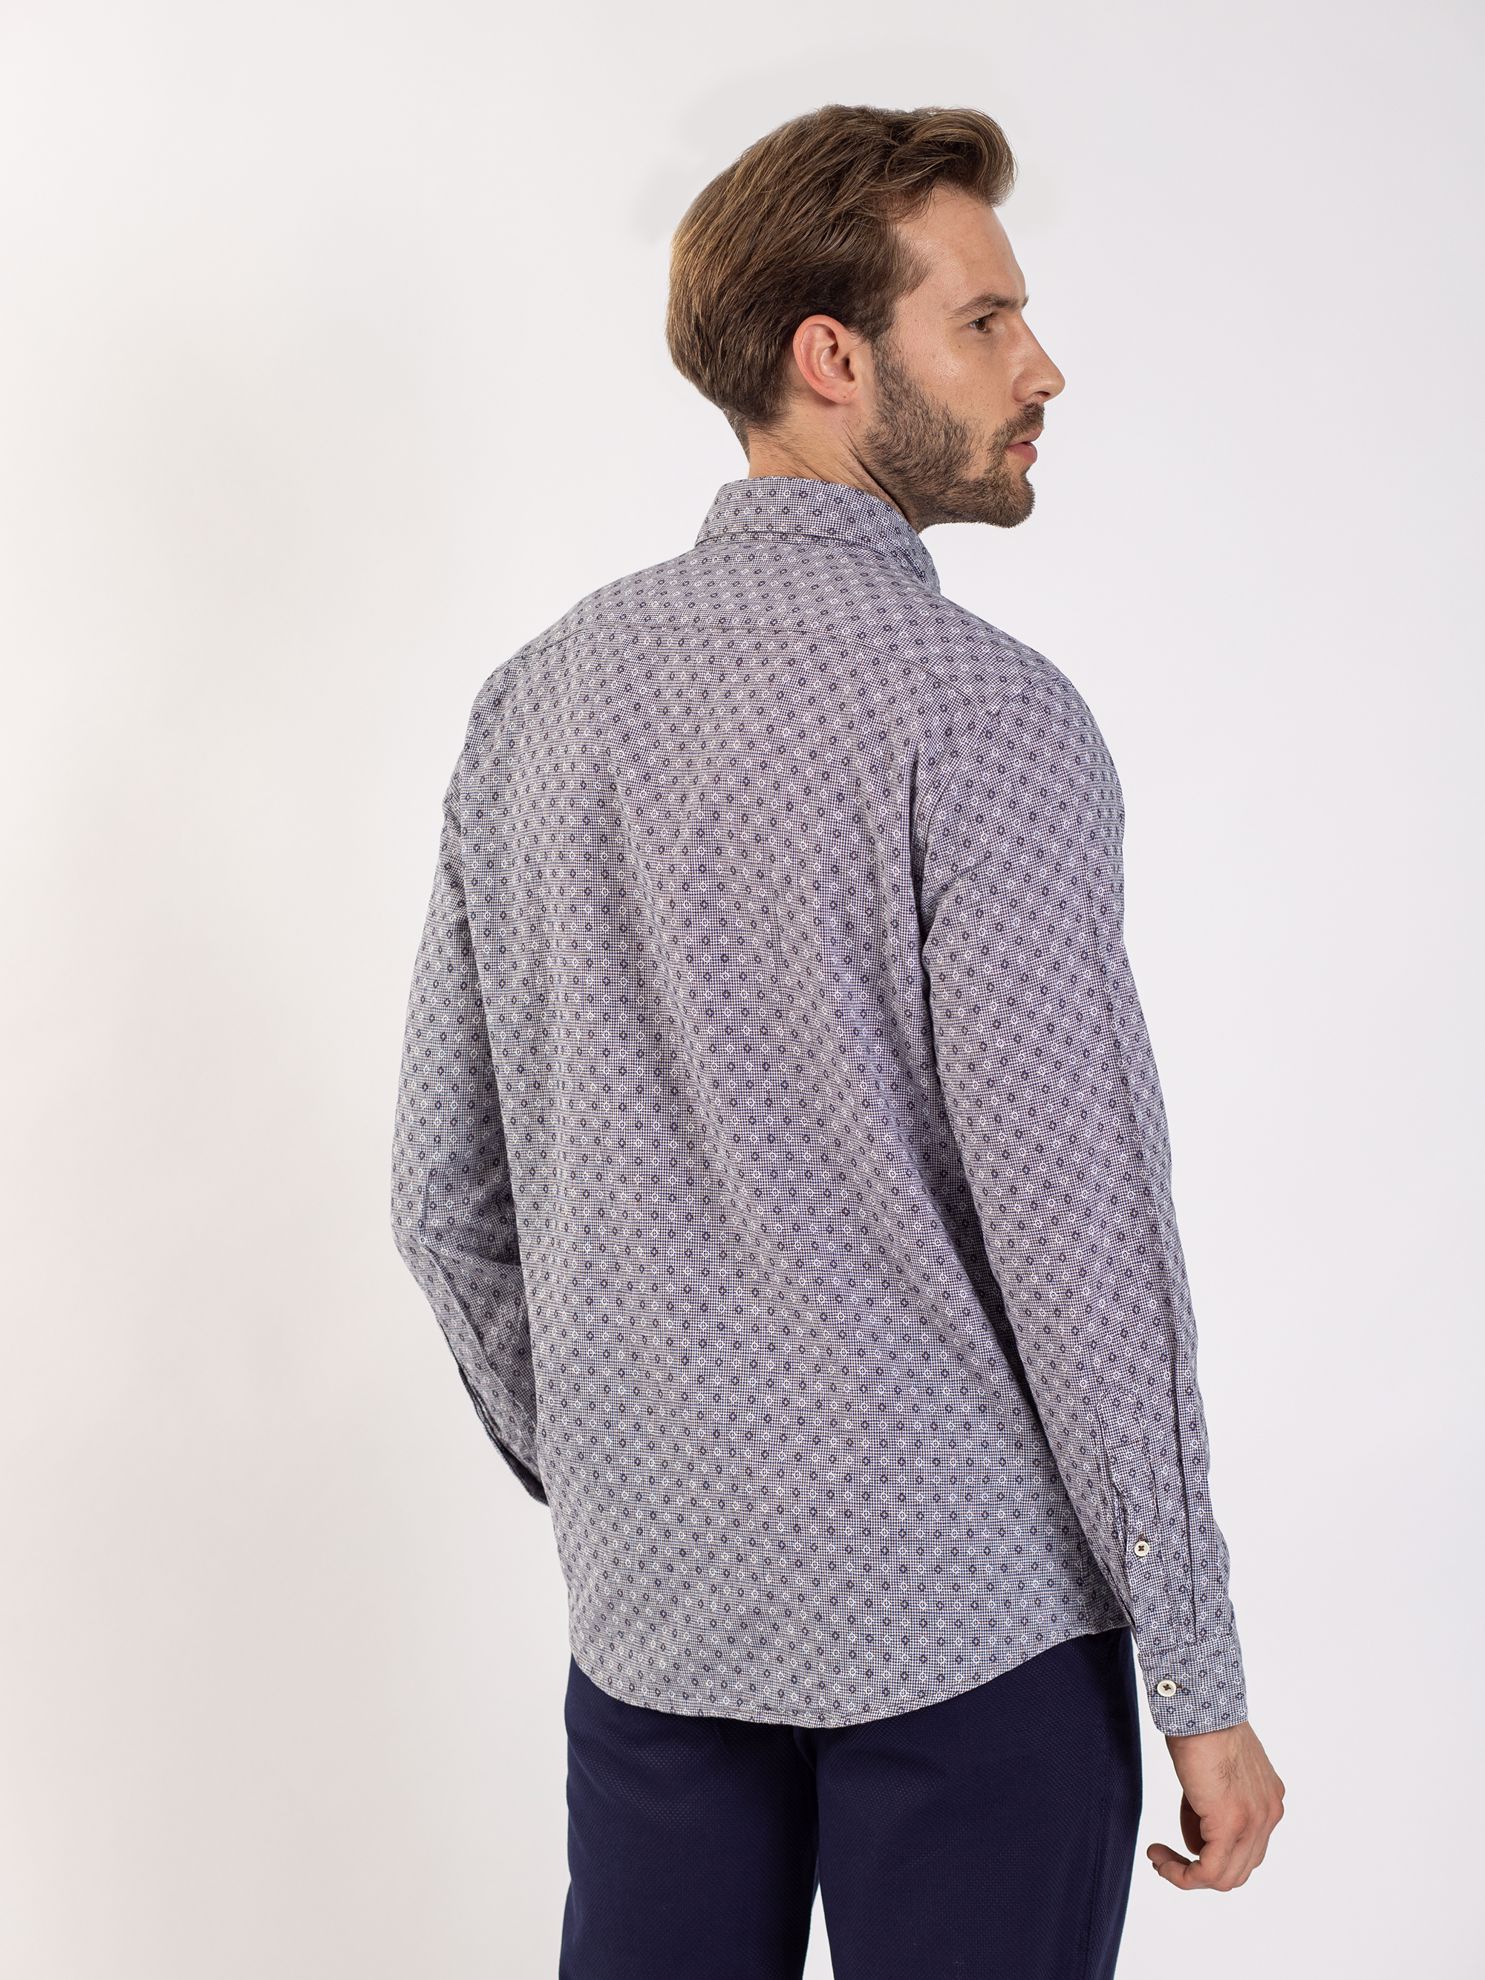 Karaca Erkek Slim Fit Gömlek-Açık Kahverengi. ürün görseli